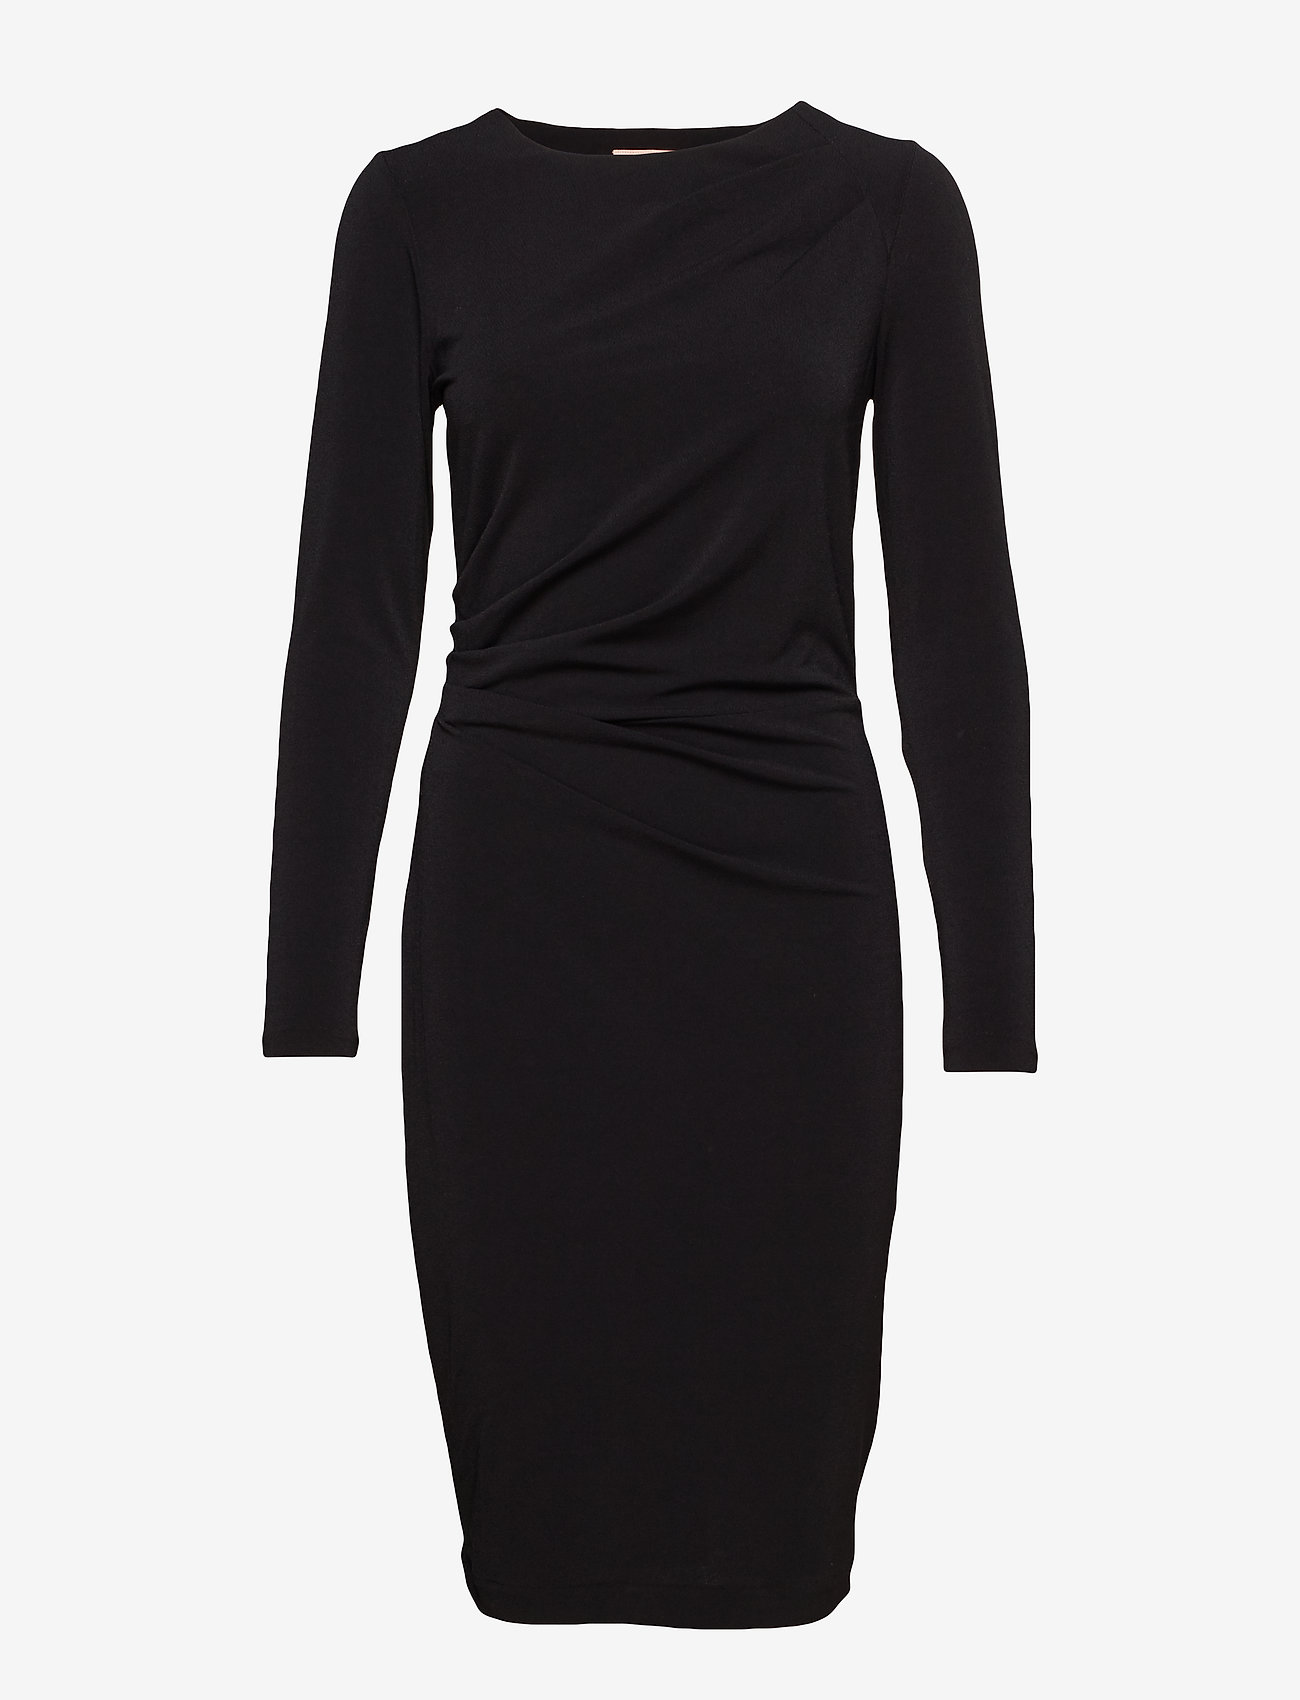 InWear - Trude Dress - midi dresses - black - 0